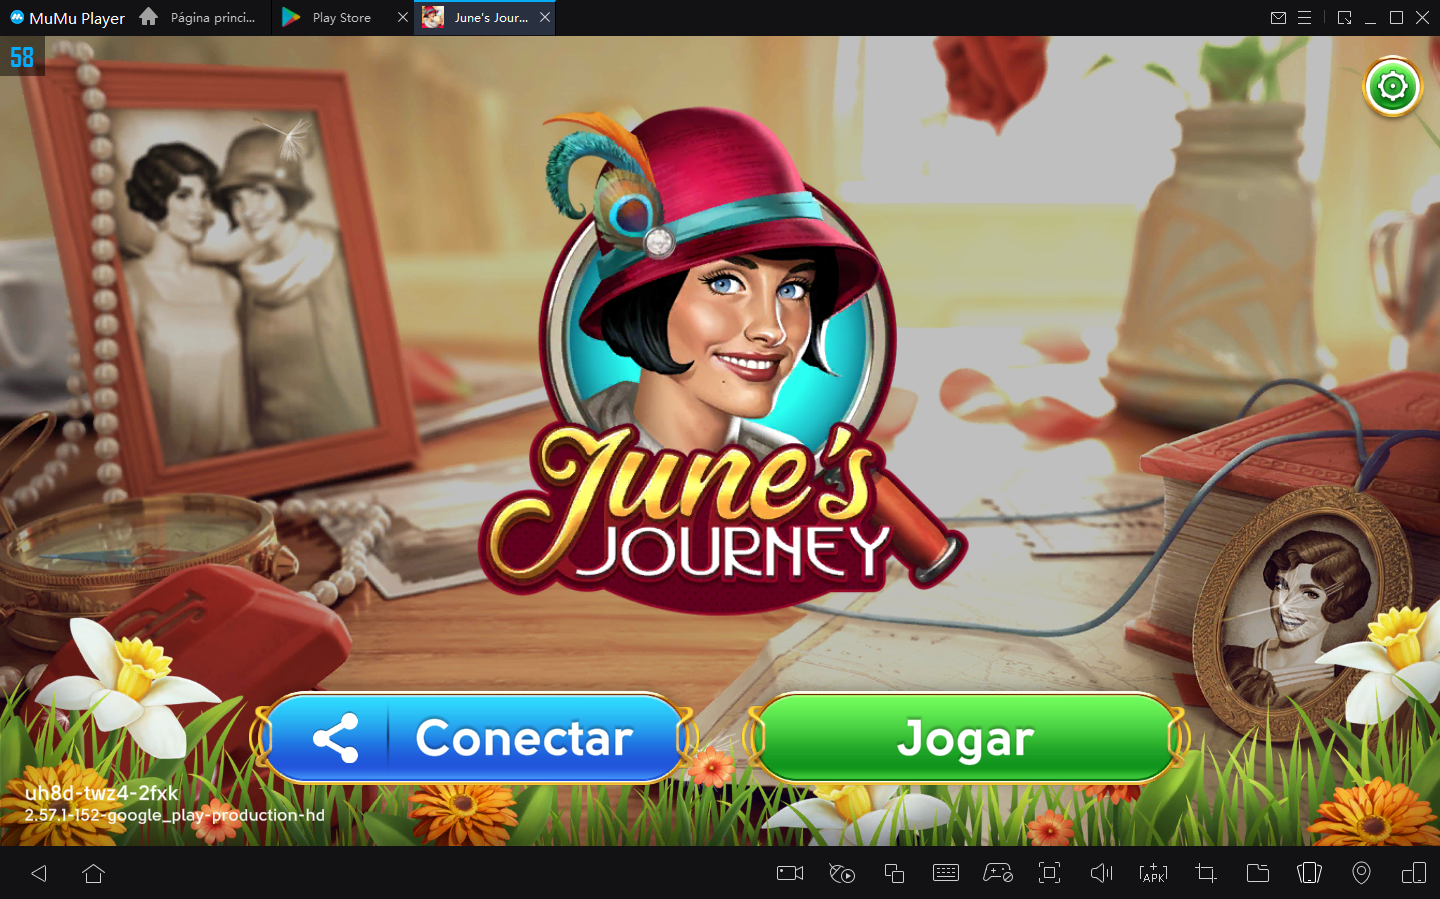 Como jogar June's Journey - Caça-objetos no PC com Emulador Android